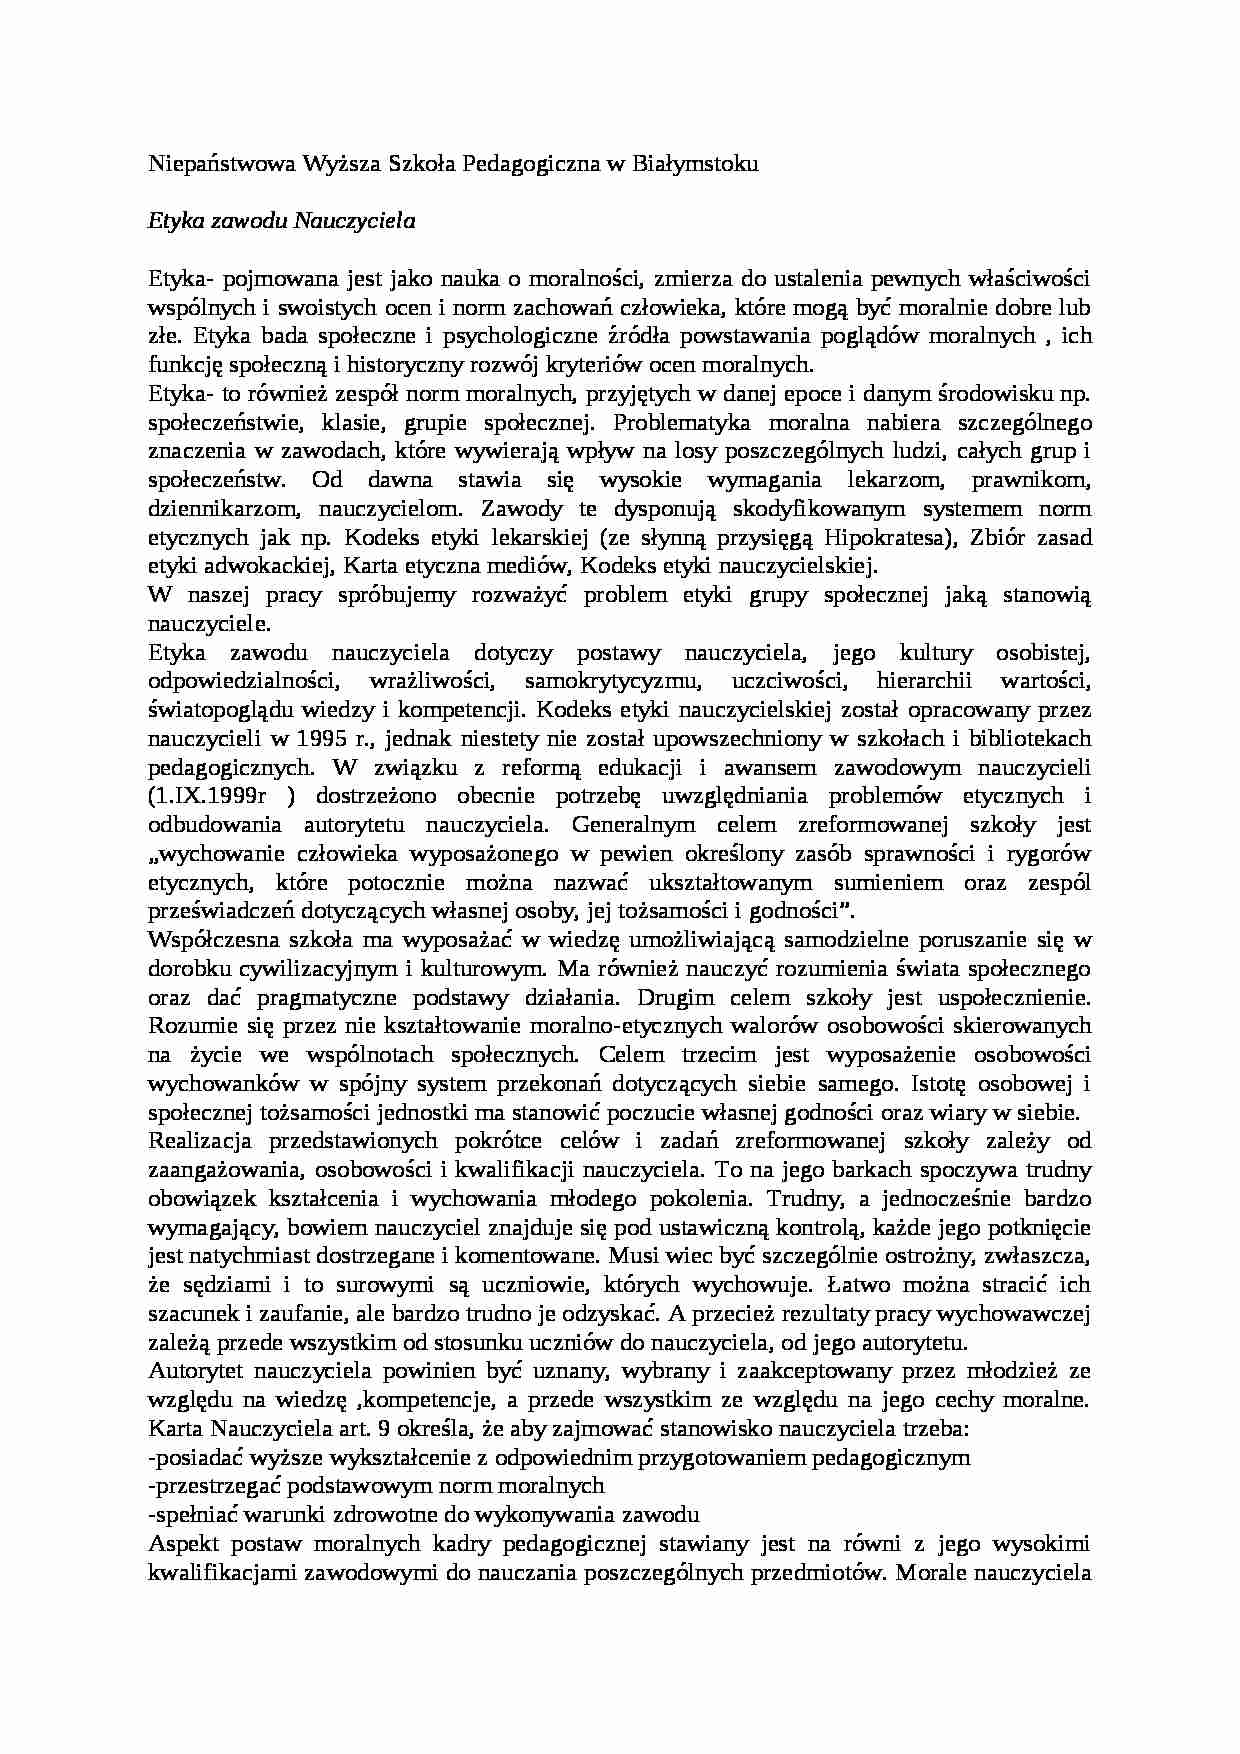 Niepaństwowa Wyższa Szkoła Pedagogiczna w Białymstoku- pedagogika - strona 1